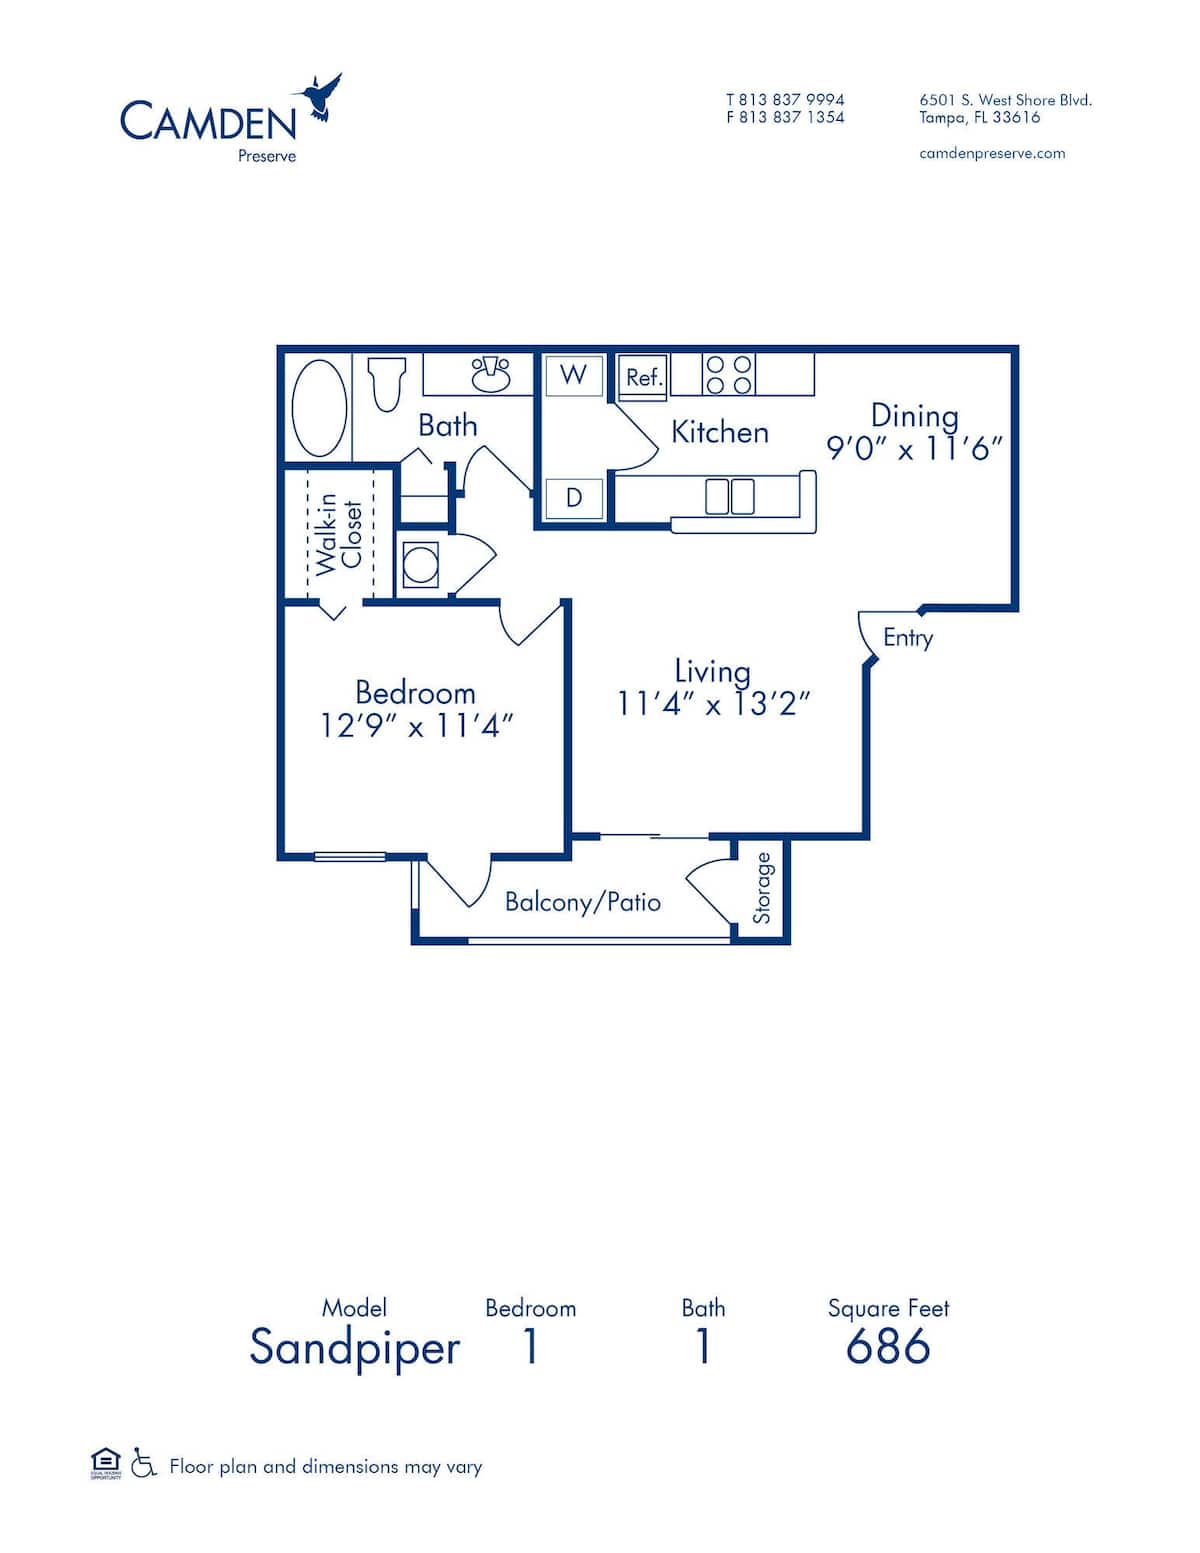 Floorplan diagram for Sandpiper, showing 1 bedroom